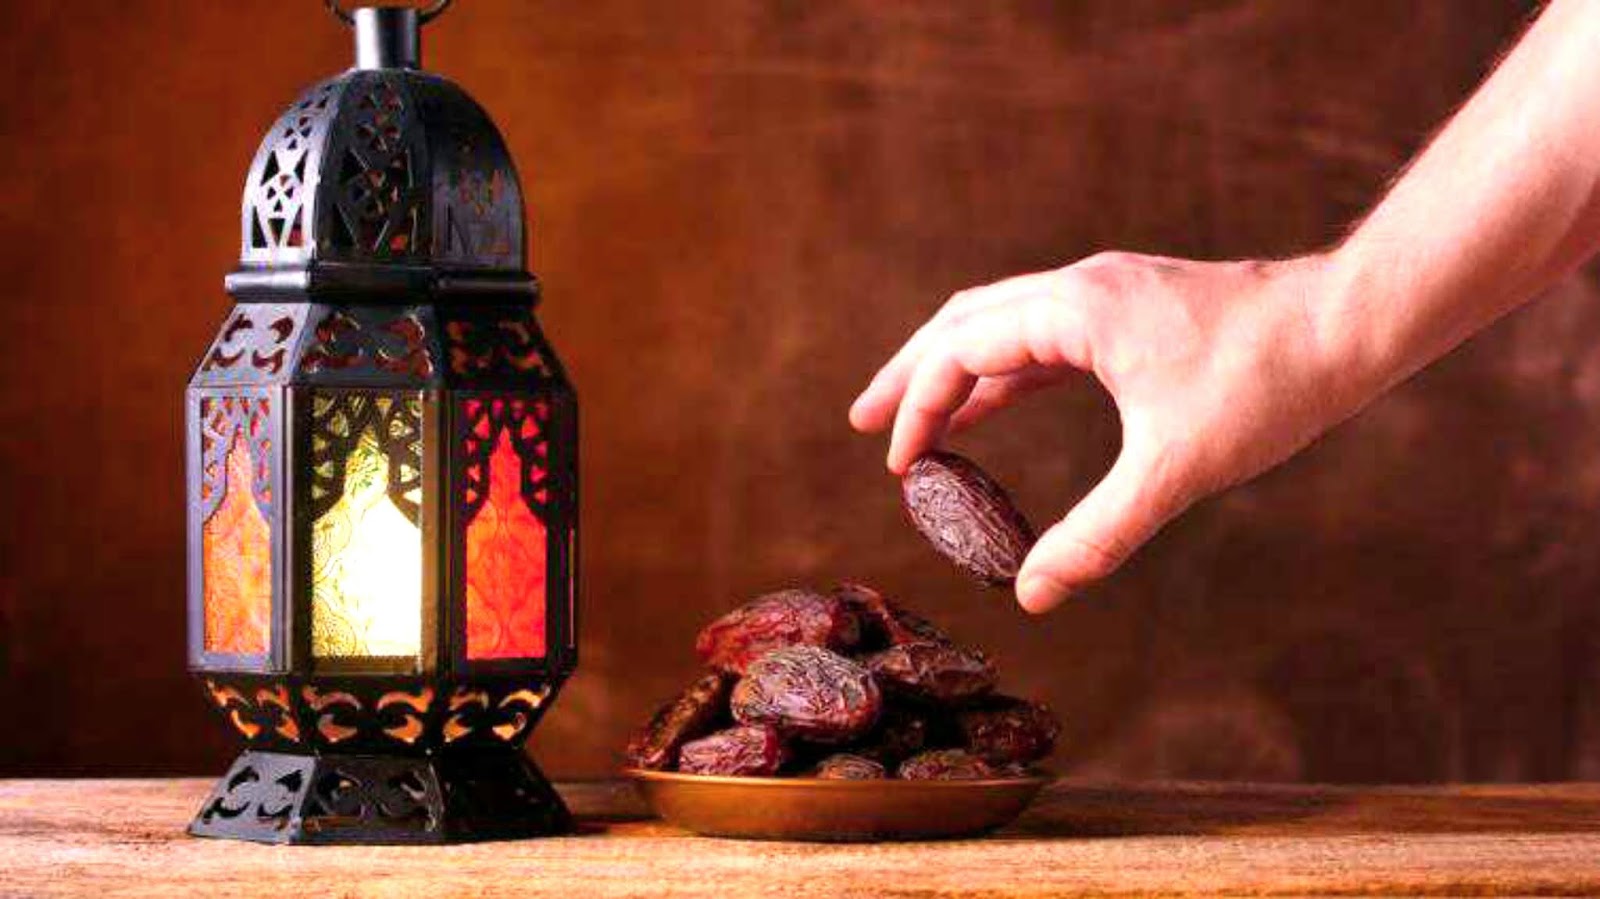 فضائل رمضانية.. الصيام لتكفير الذنوب إذا اجتنبت الكبائر